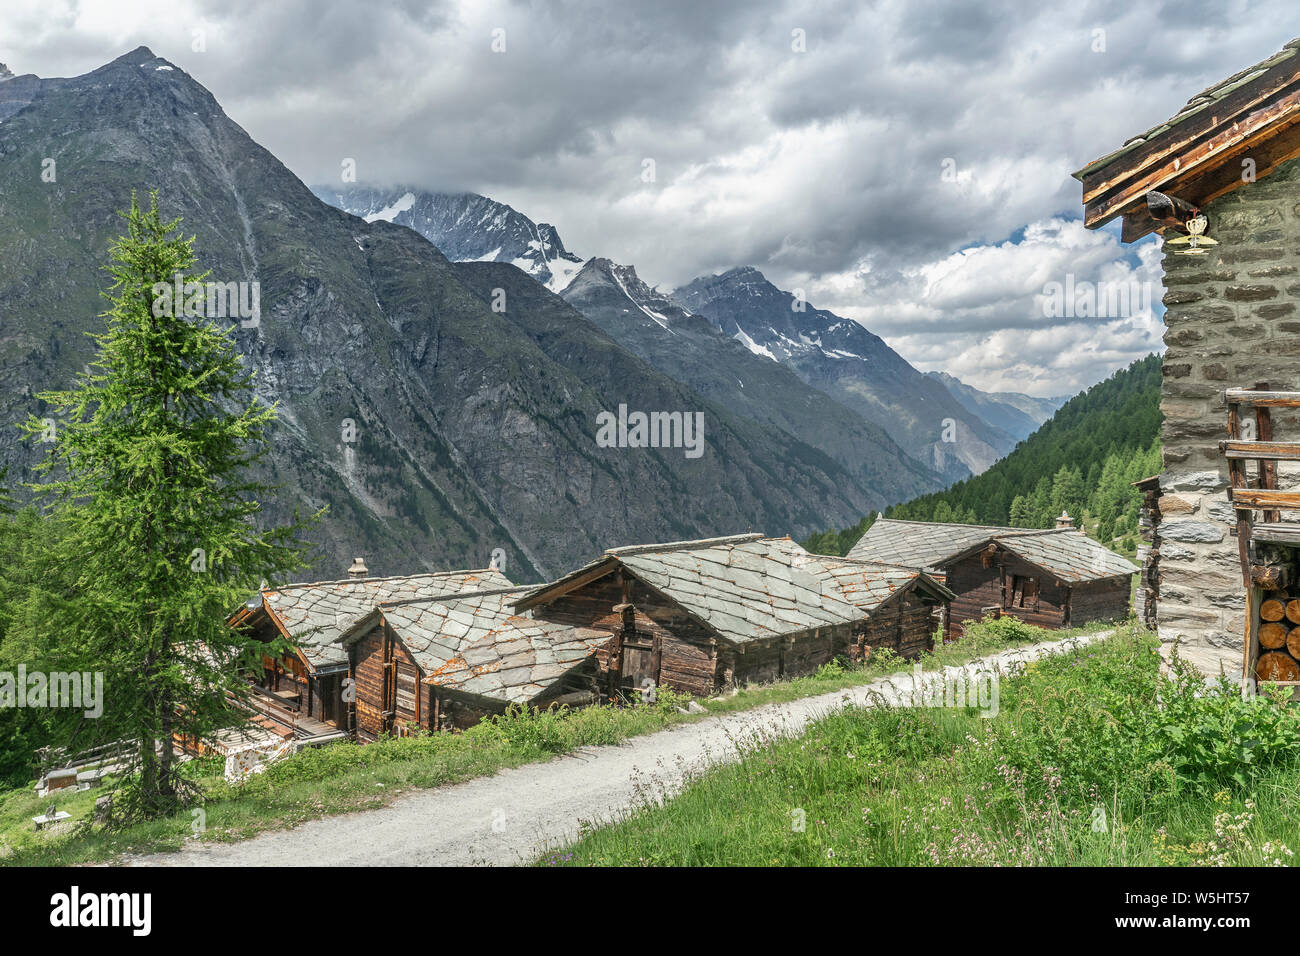 Maisons traditionnelles en bois dans le village de Taesch, au-dessus de Zermatt, la célèbre destination touristique dans le canton du Valais, Wallis, Suisse Banque D'Images